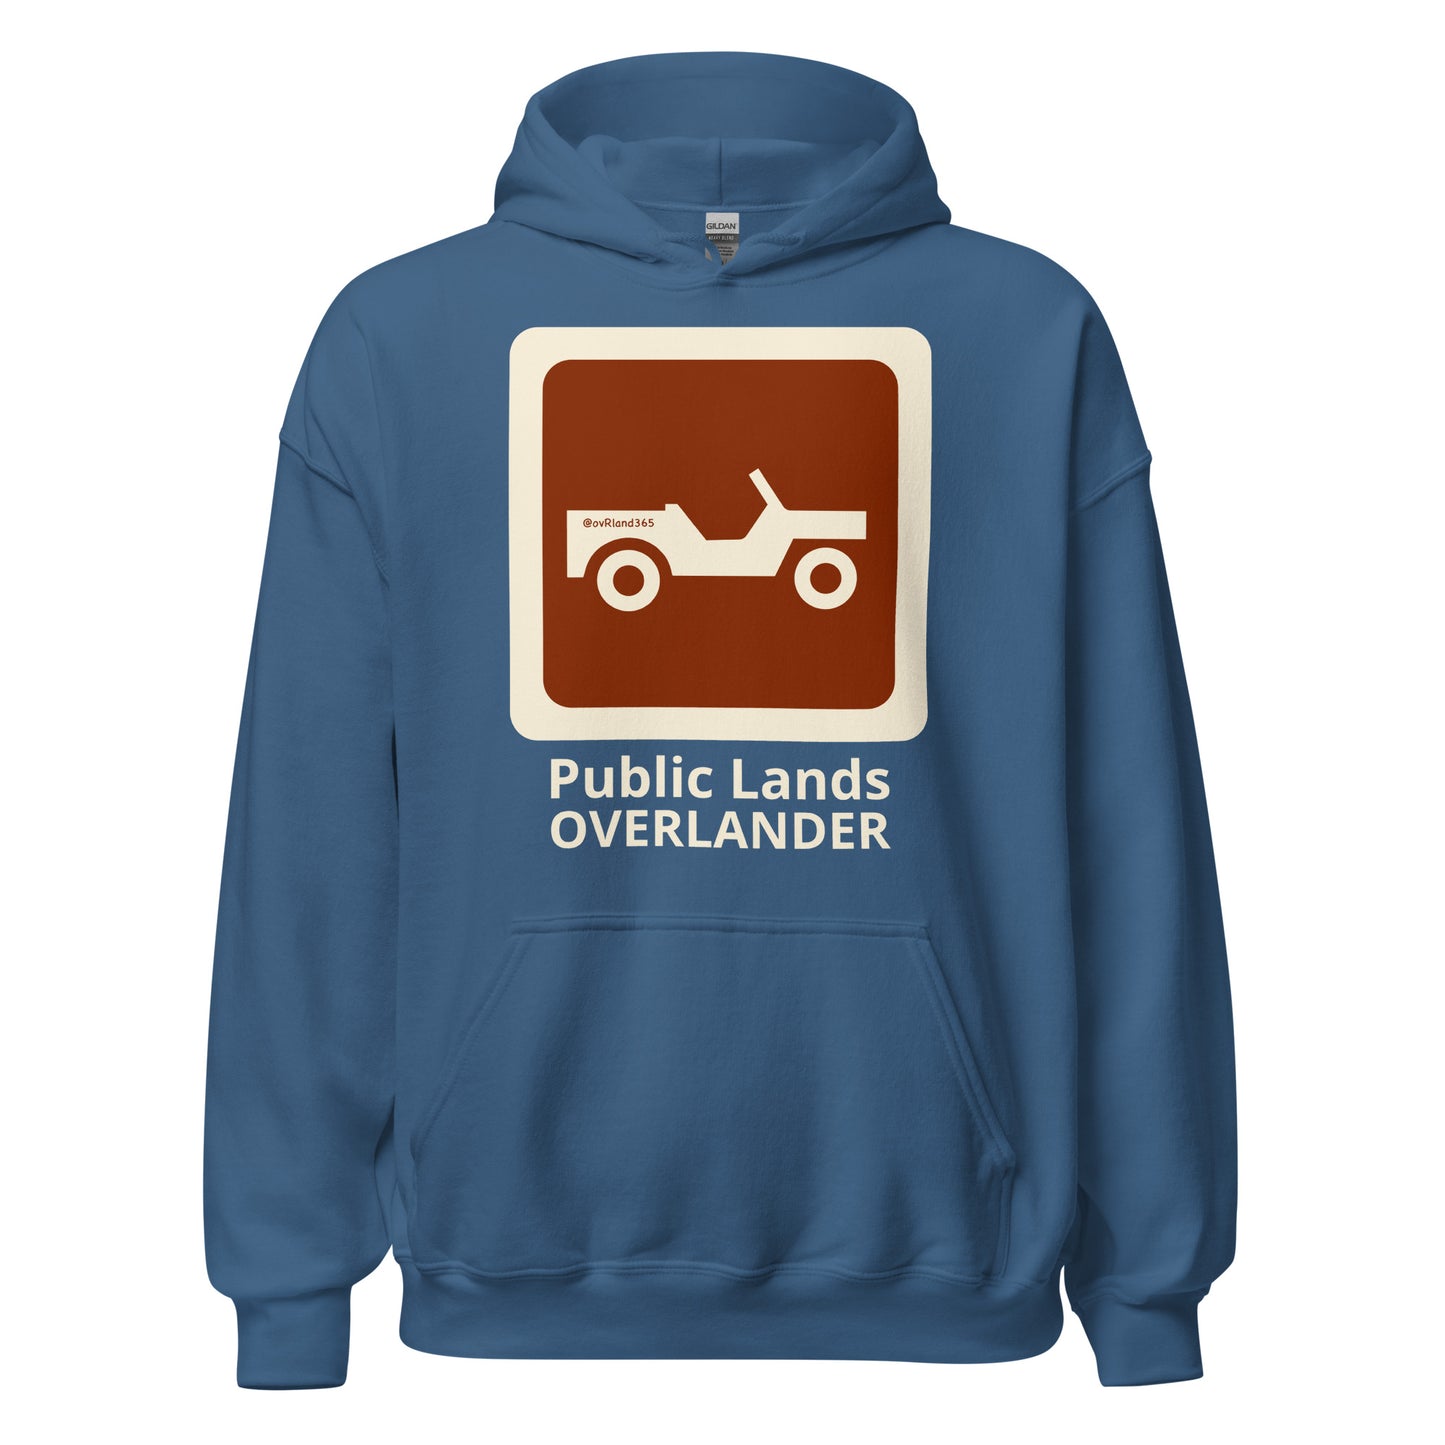 Indigo Blue Public Lands OVERLANDER hoodie. overland365.com